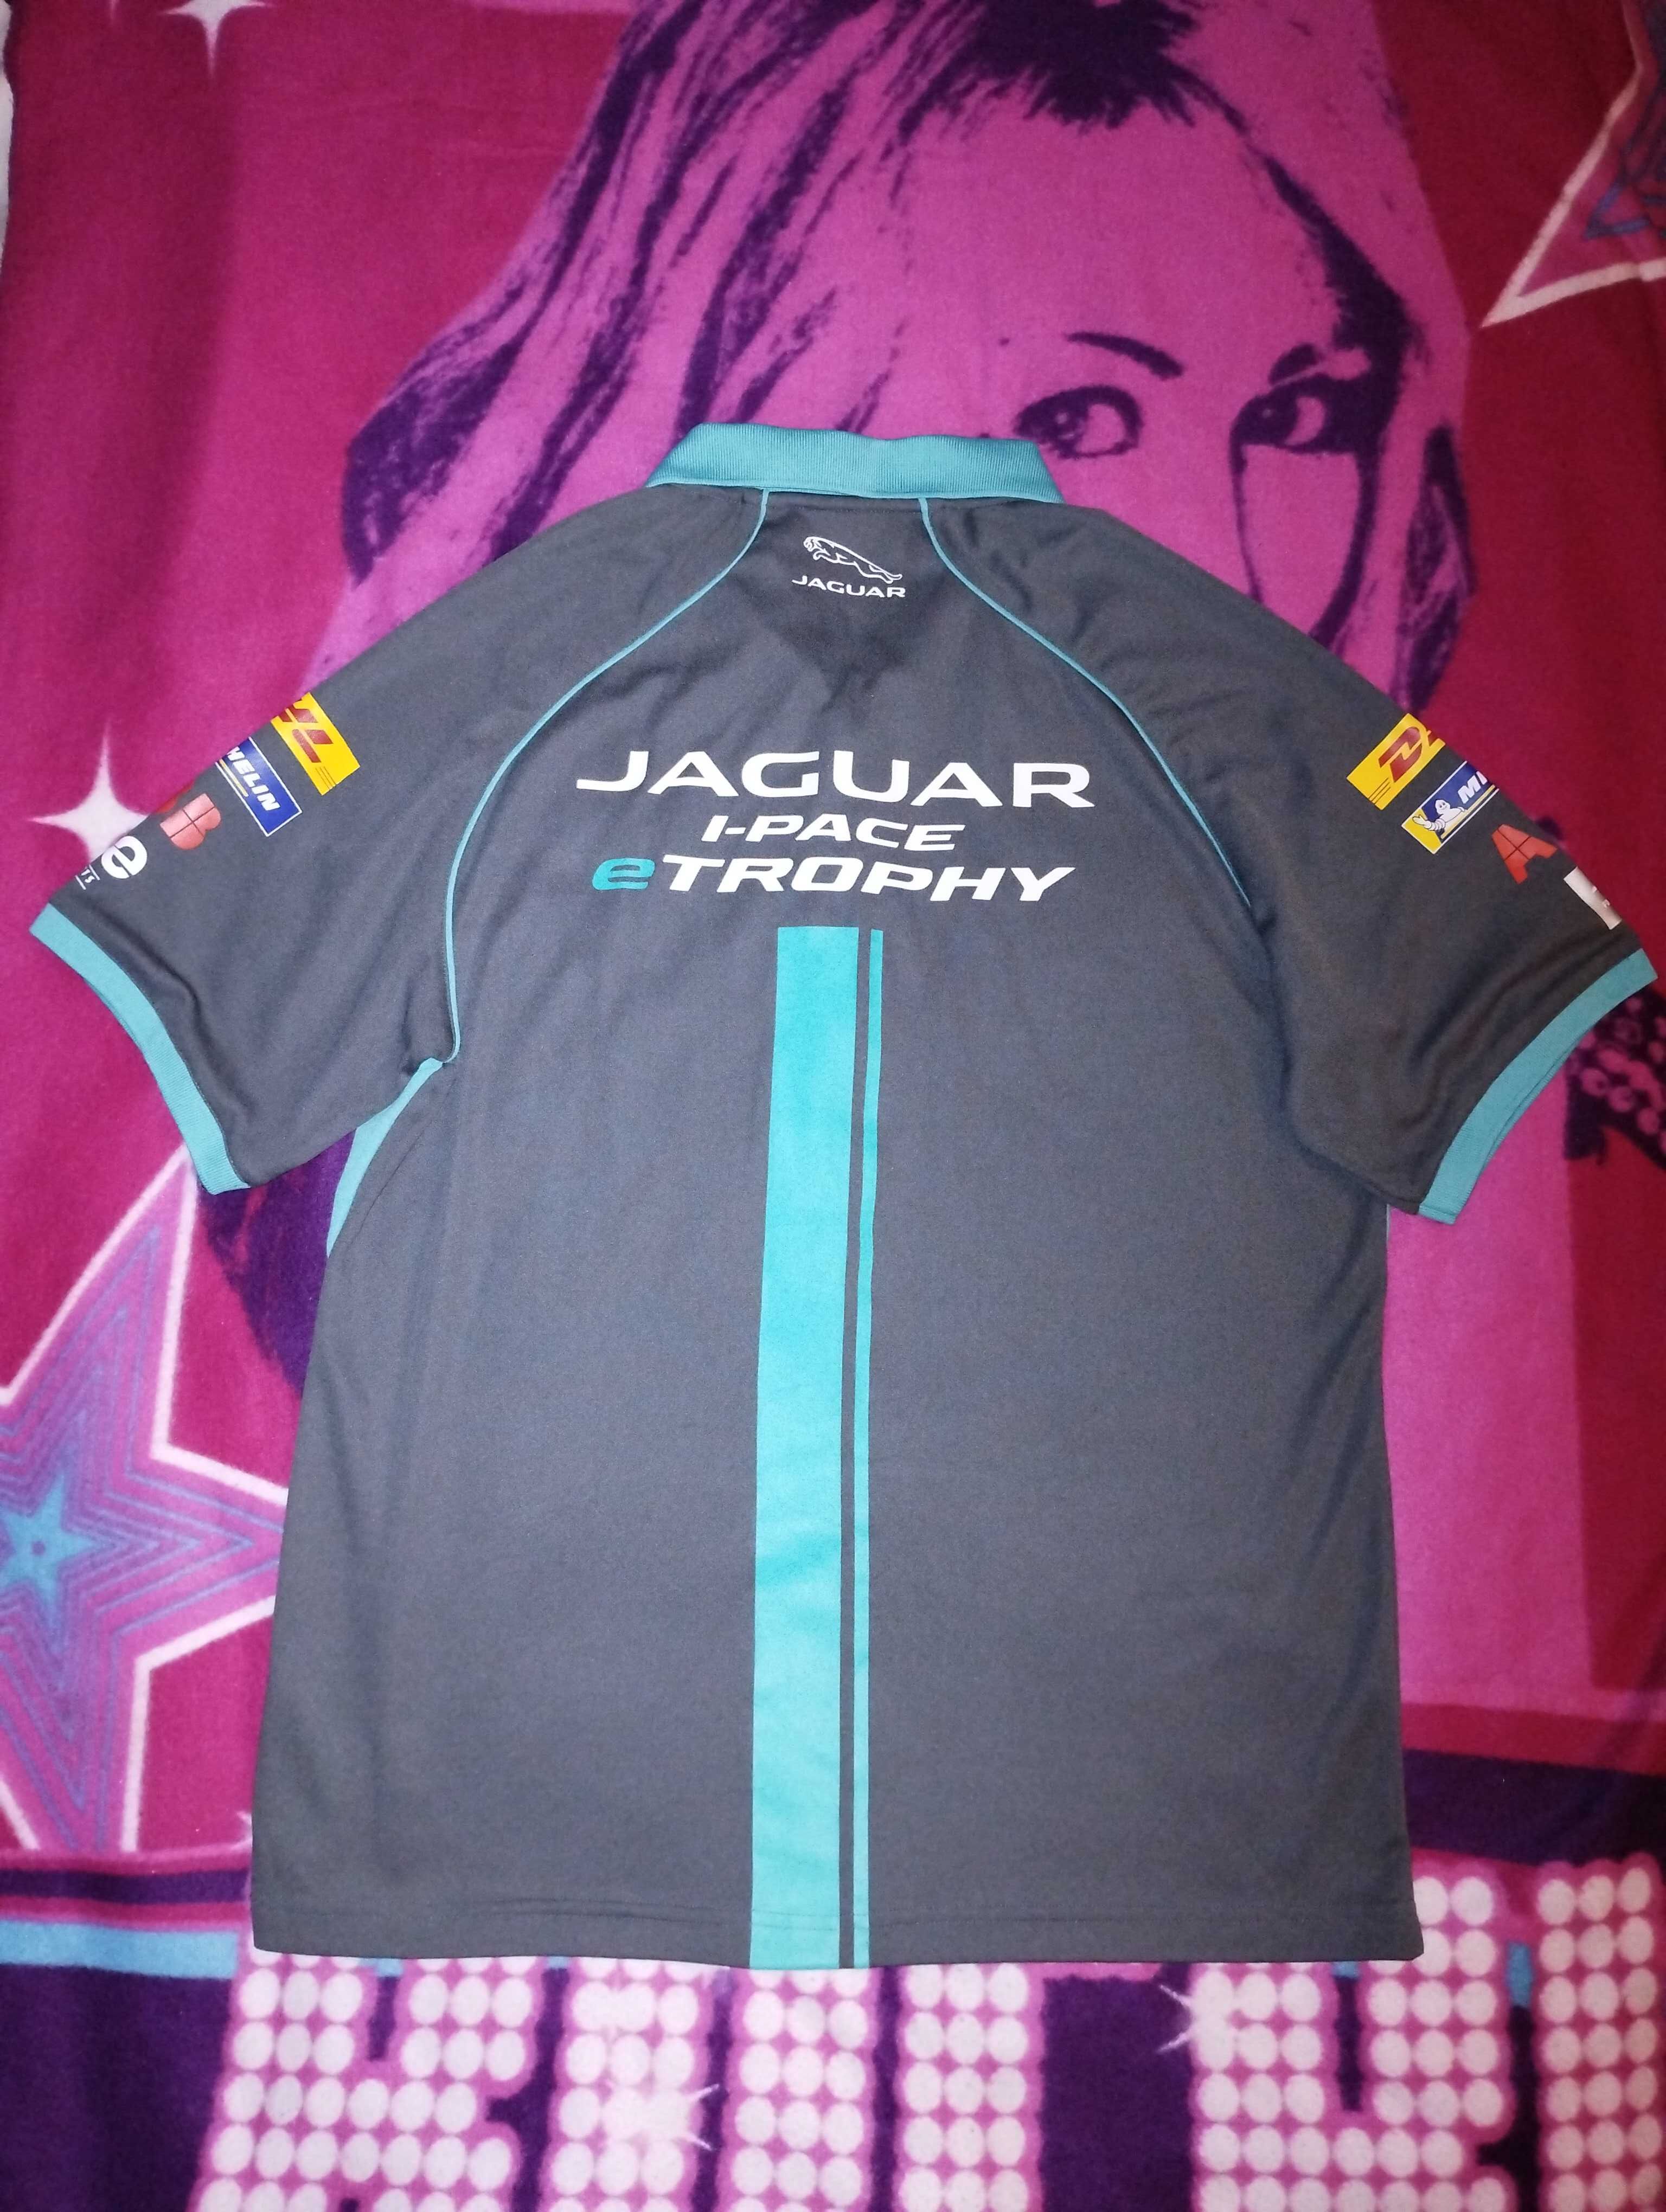 Koszulka męska polo JAGUAR i-PACE e-TROPHY XL